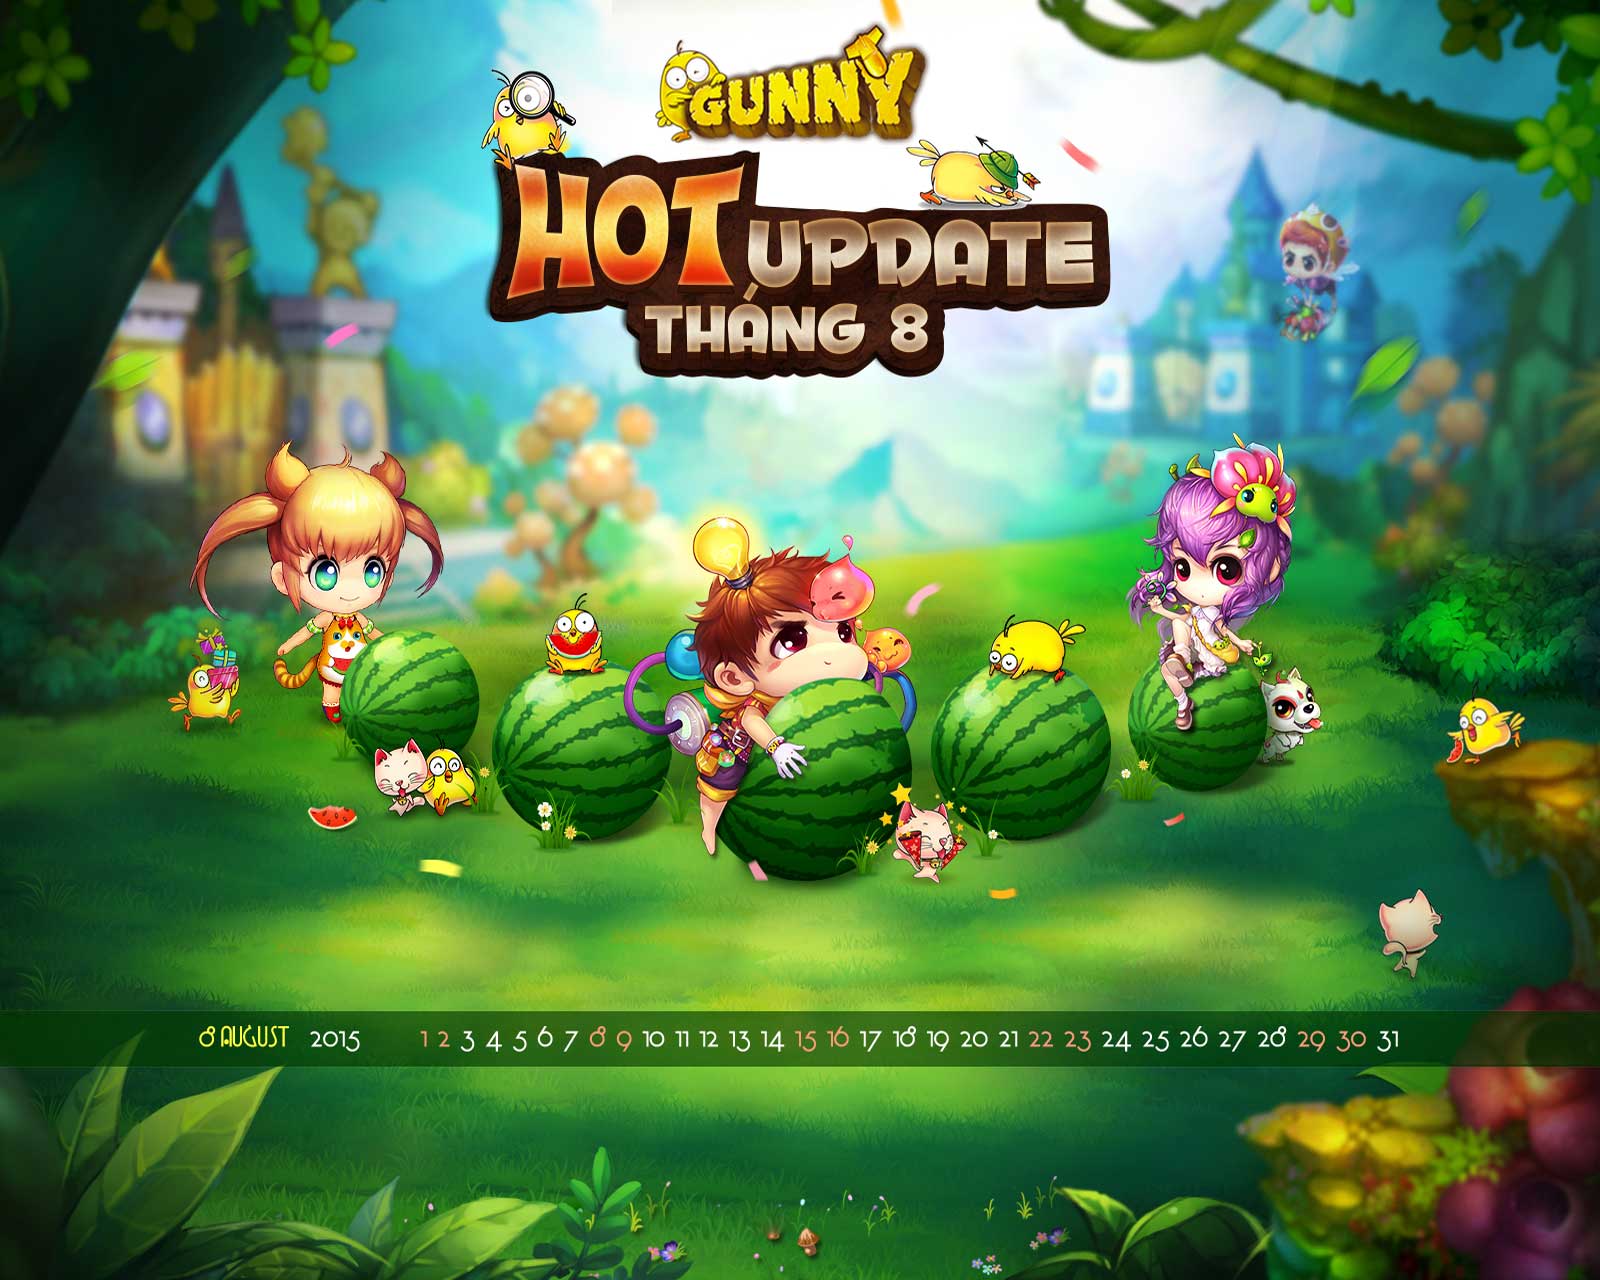 Hướng dẫn đổi tên nhân vật game Gunny Origin - Download.com.vn